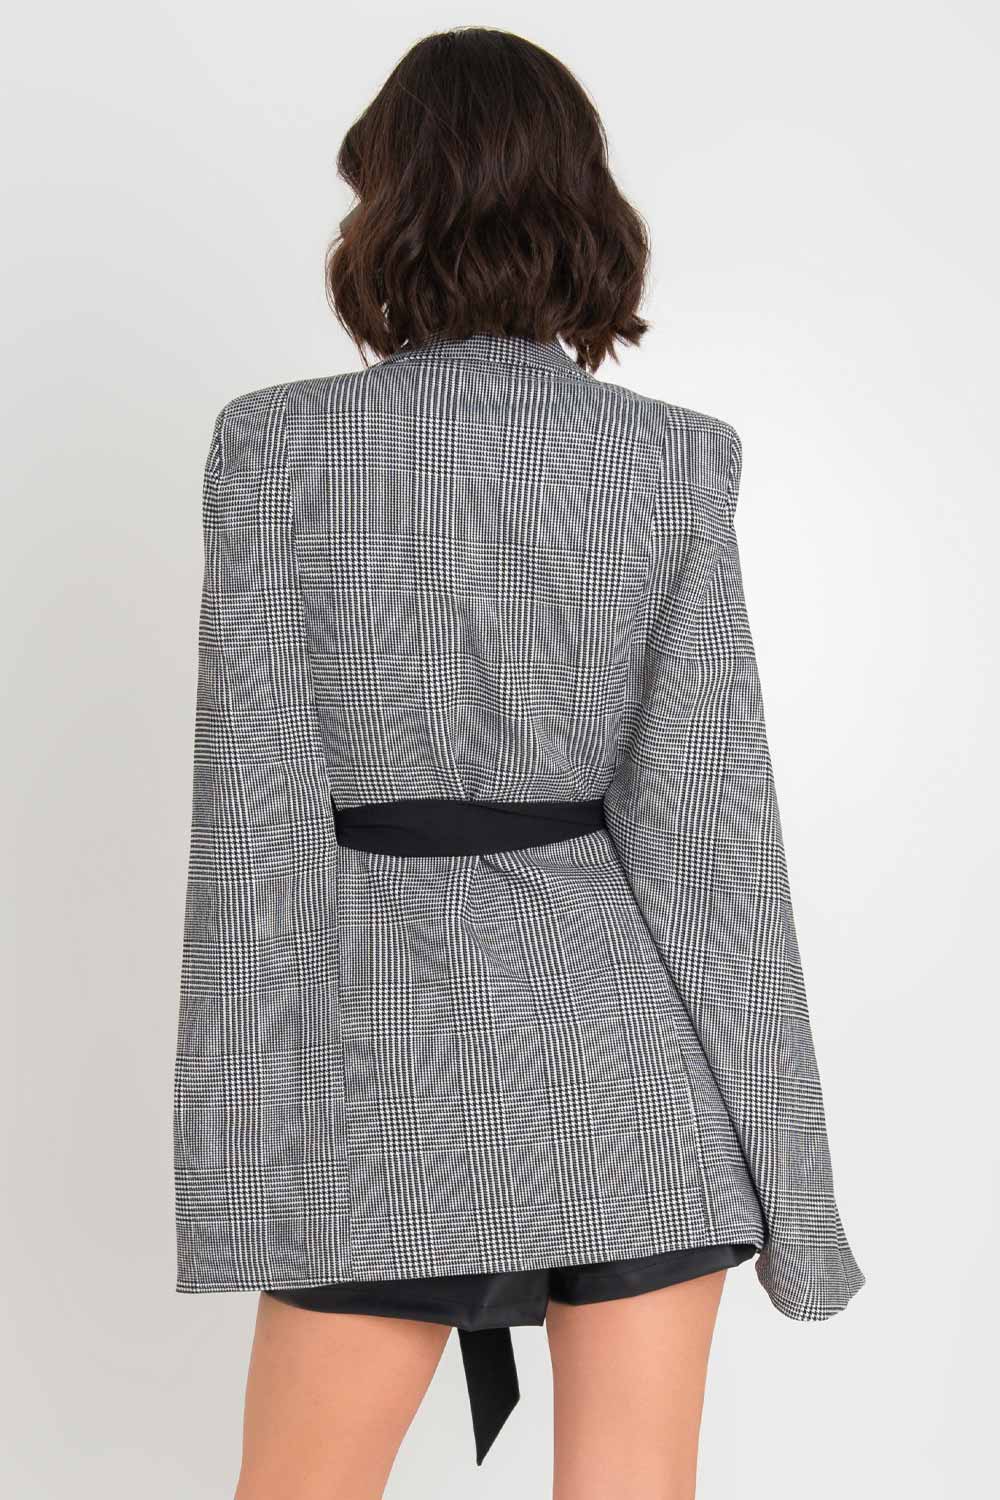 Abrigo de manga capa, estampado glenn check, con solapa, trabillas en cintura, bolsillos delanteros con vivos y cinturón amarrable en contraste.